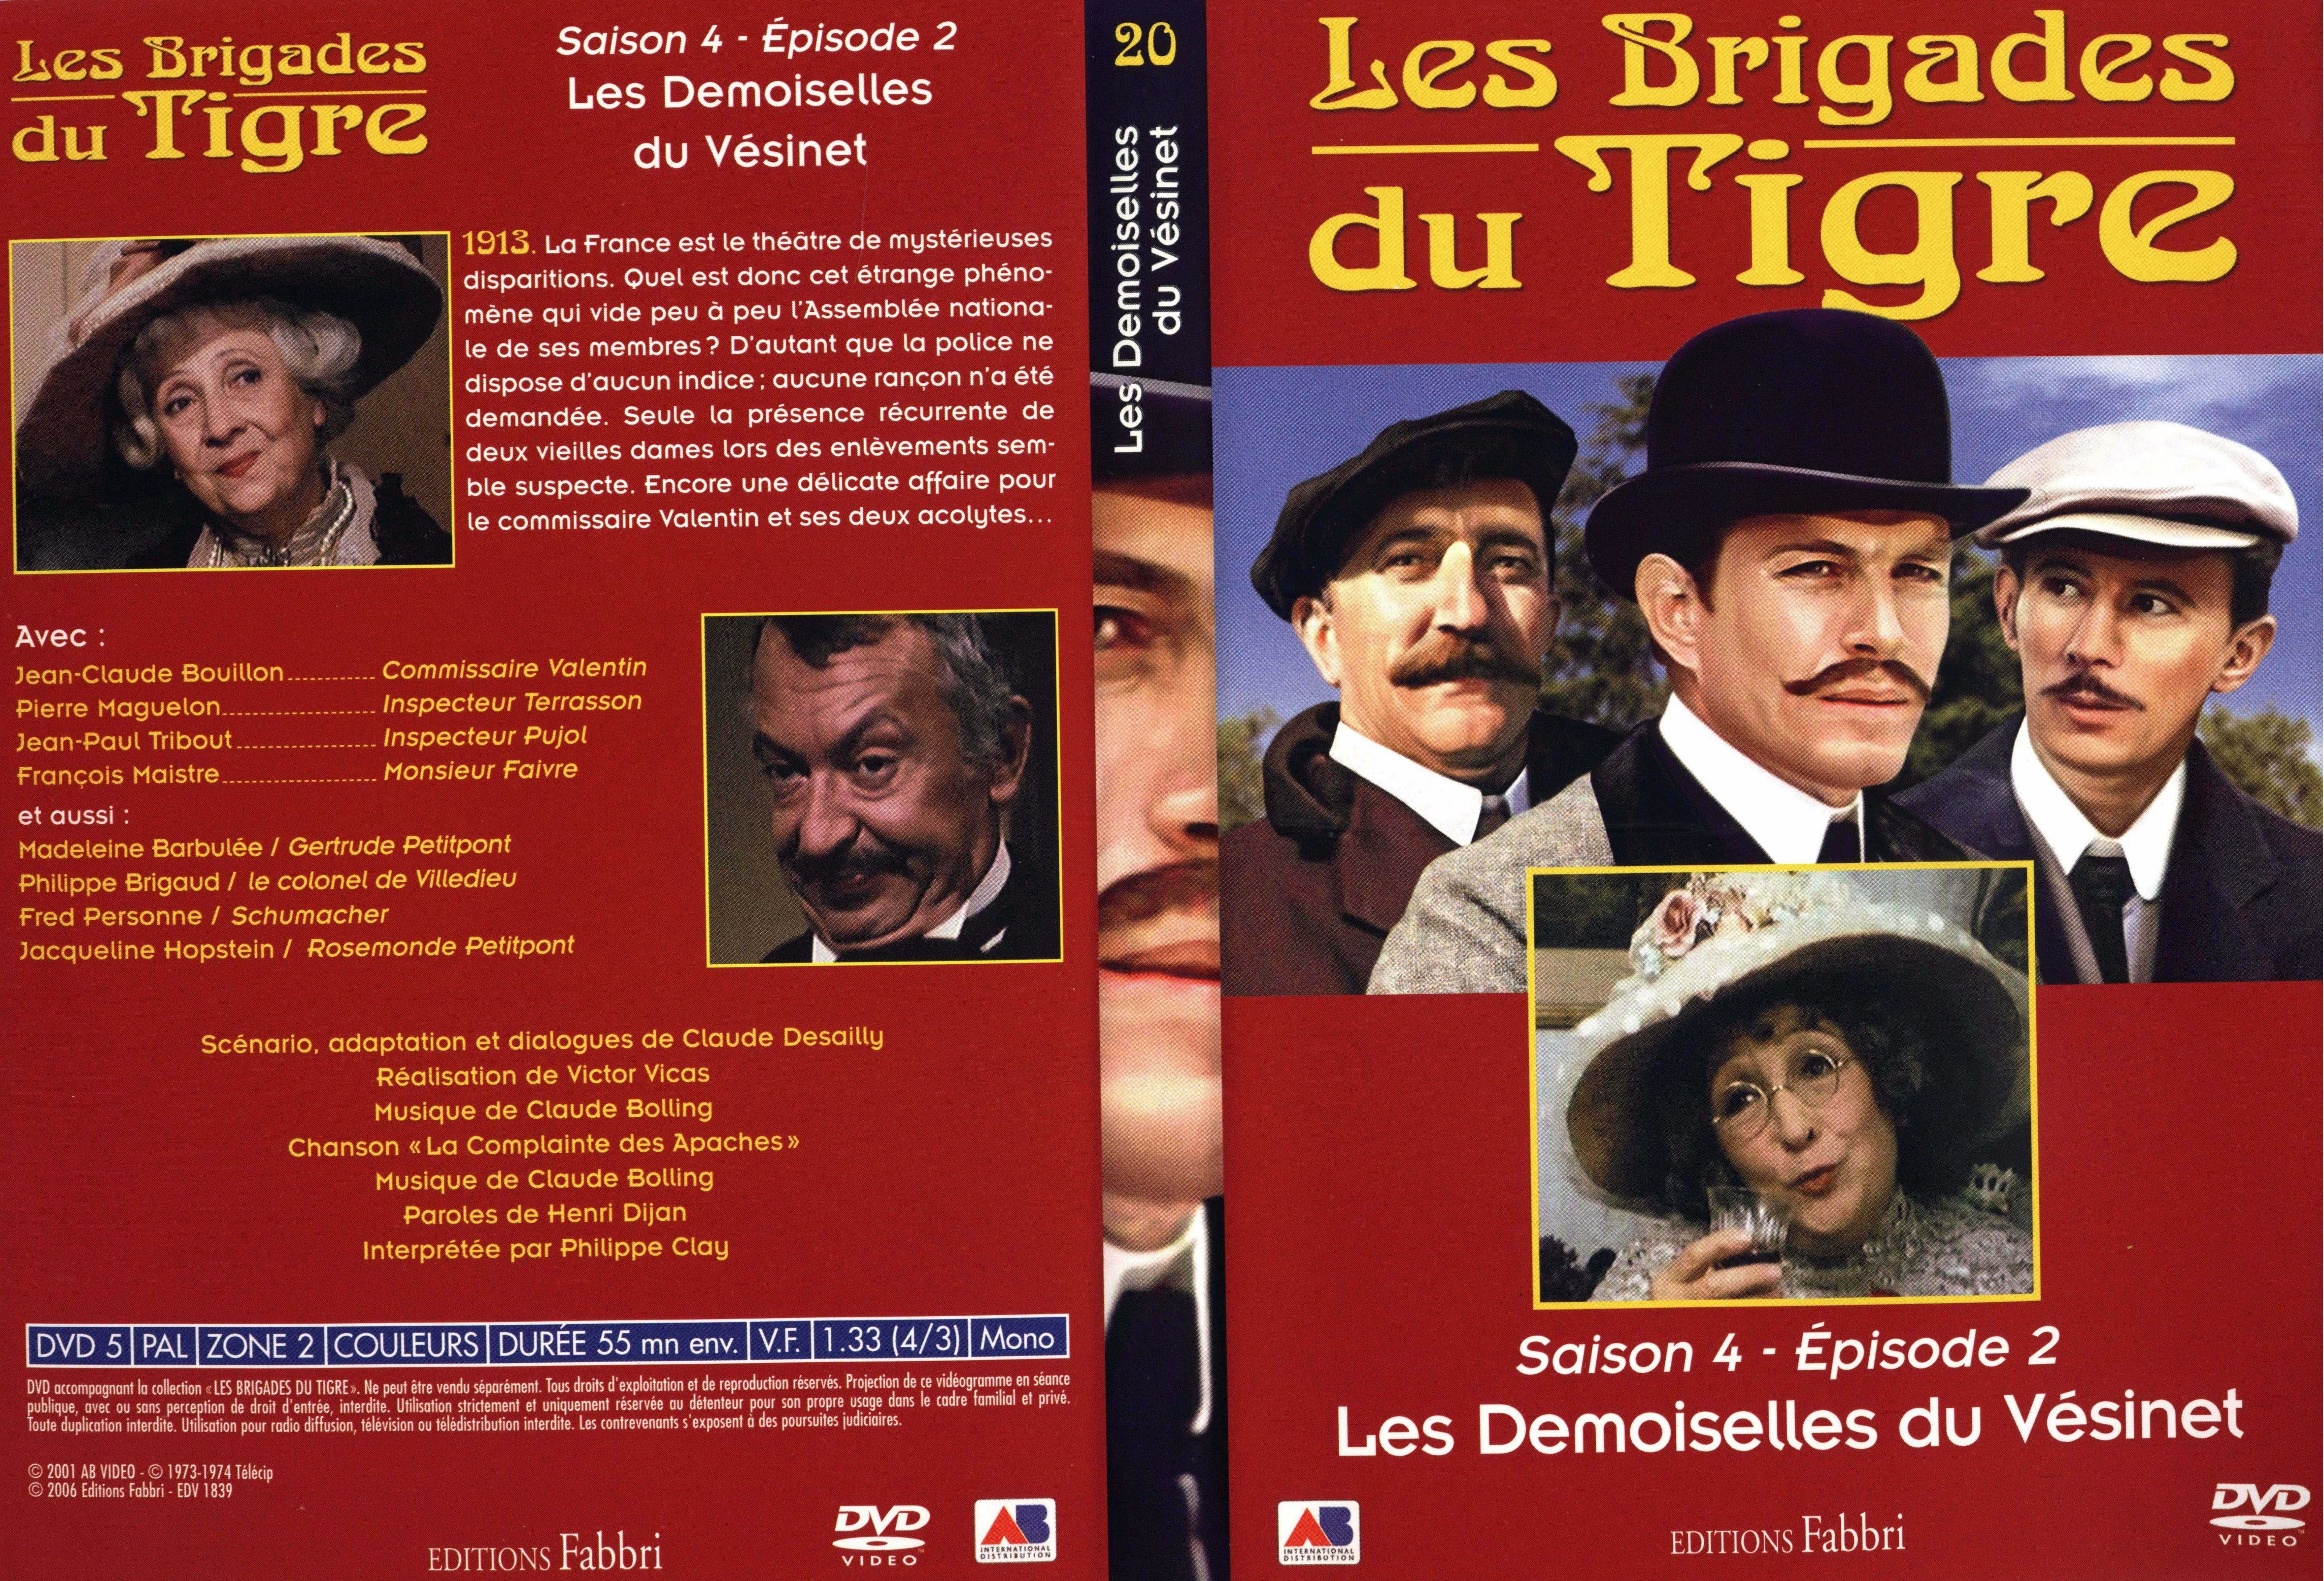 Jaquette DVD Les brigades du tigre saison 4 pisode 2